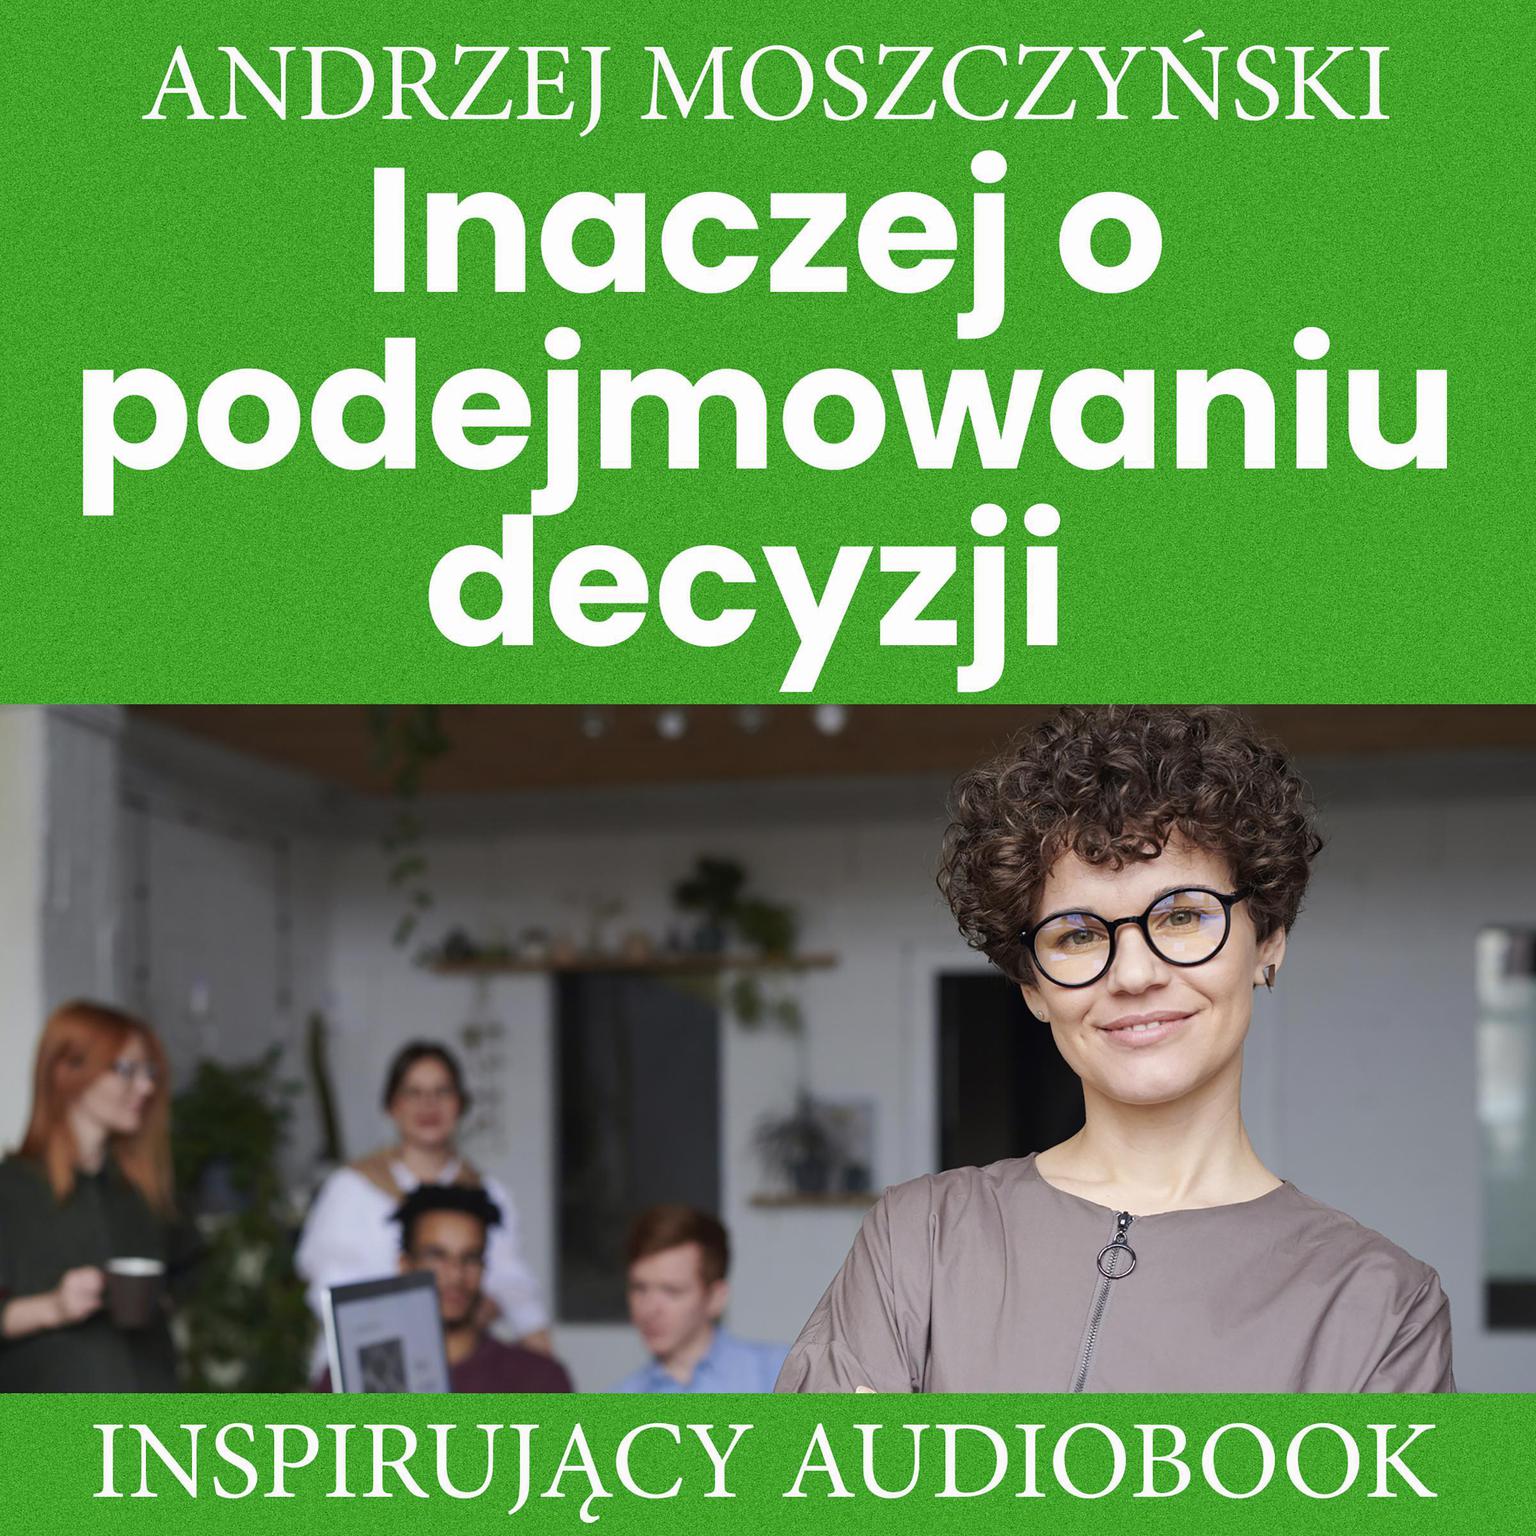 Inaczej o podejmowaniu decyzji Audiobook, by Andrzej Moszczyński